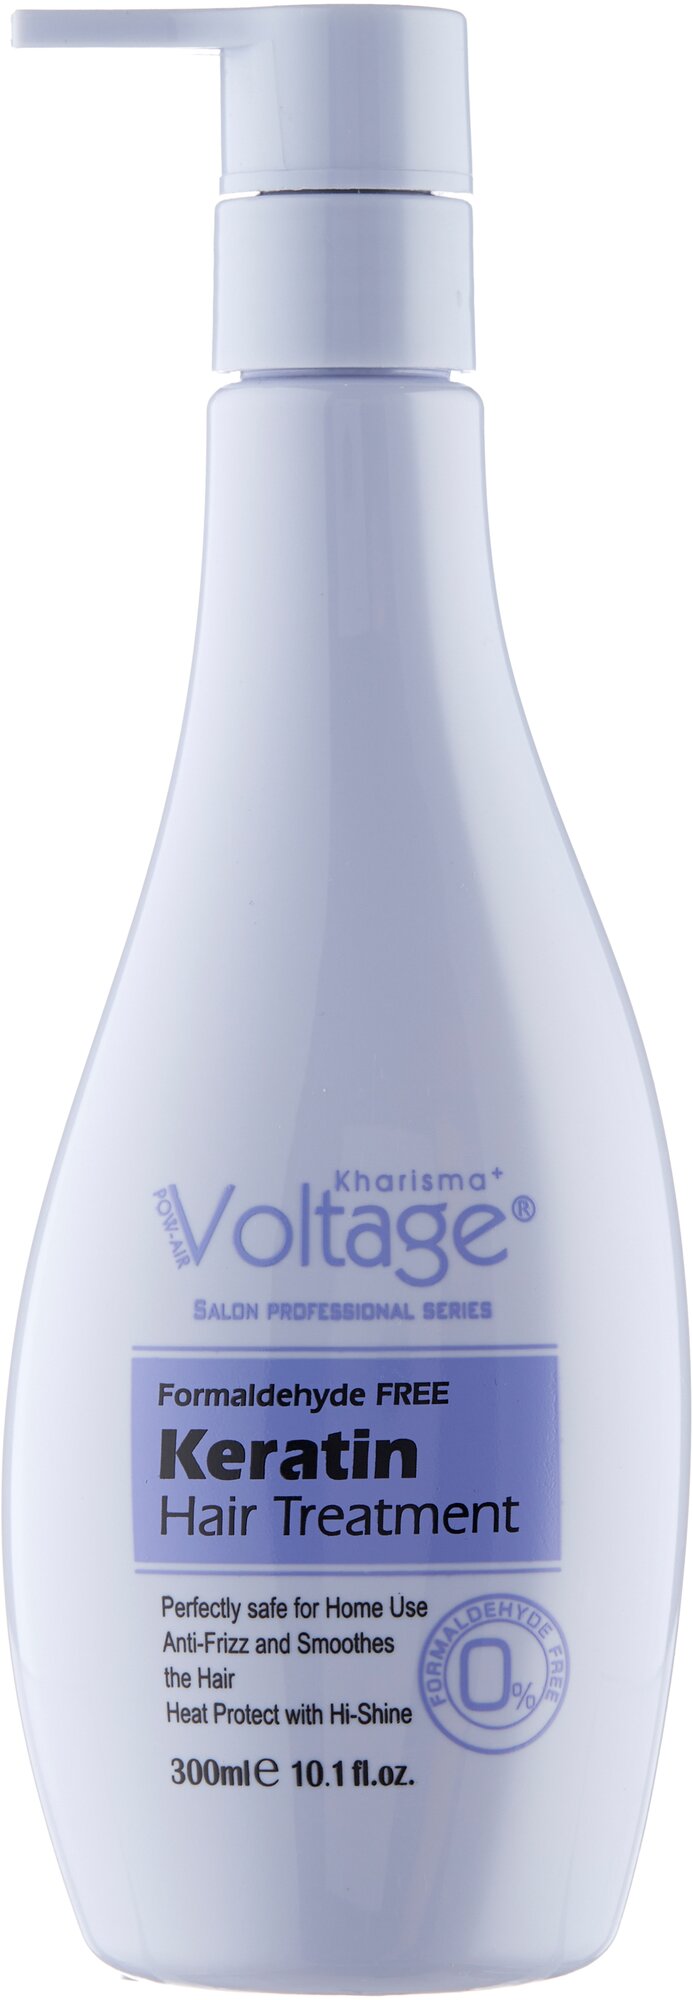 Kharisma Voltage Несмываемый уход для волос с кератином SALON PROFESSIONAL SERIES